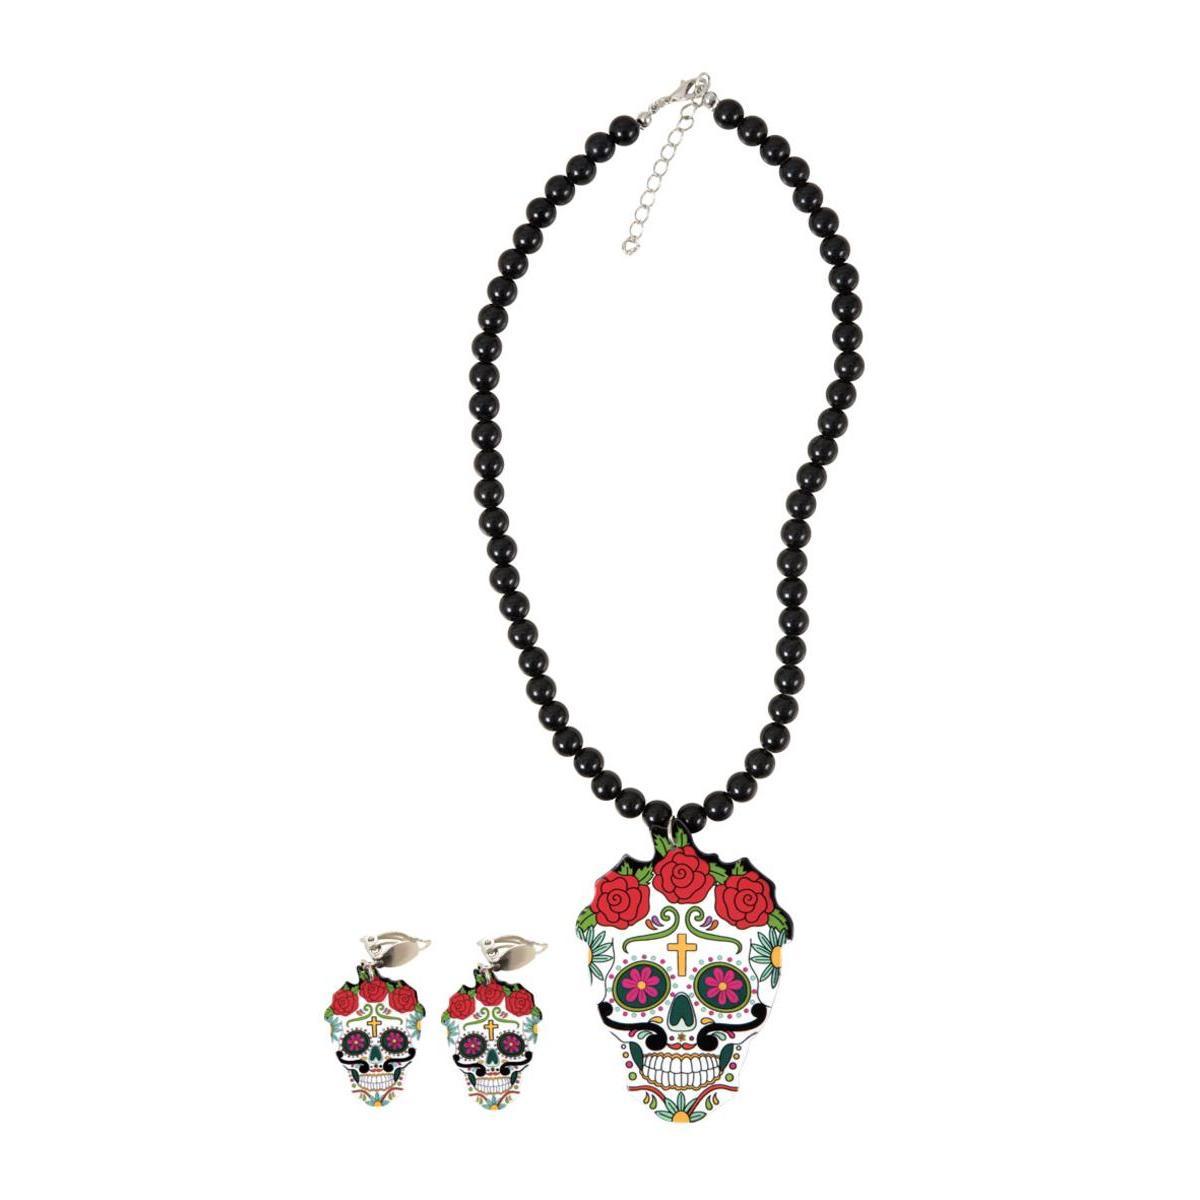 Bijoux à clips Jour des Morts (collier + boucles) - L 19 x H 1.5 x l 14 cm - Multicolore - PTIT CLOWN